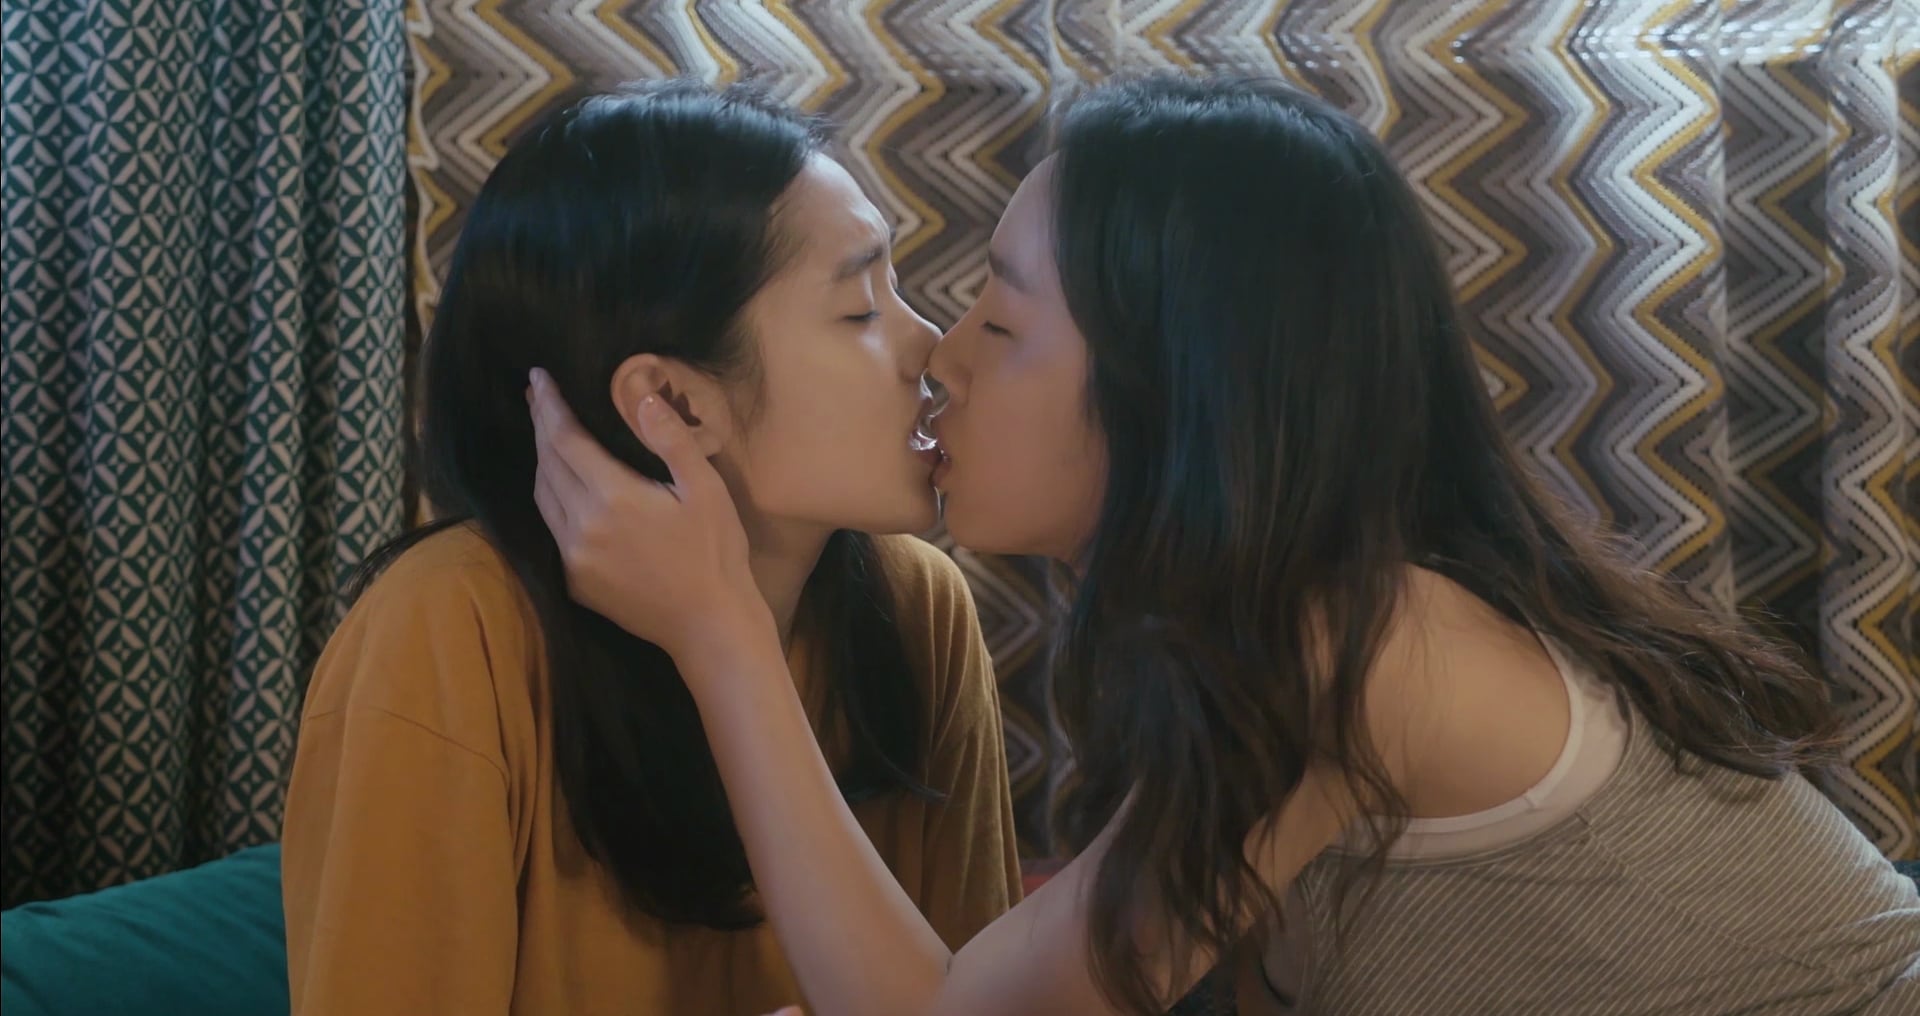 лесби целуются азиатки фото 59